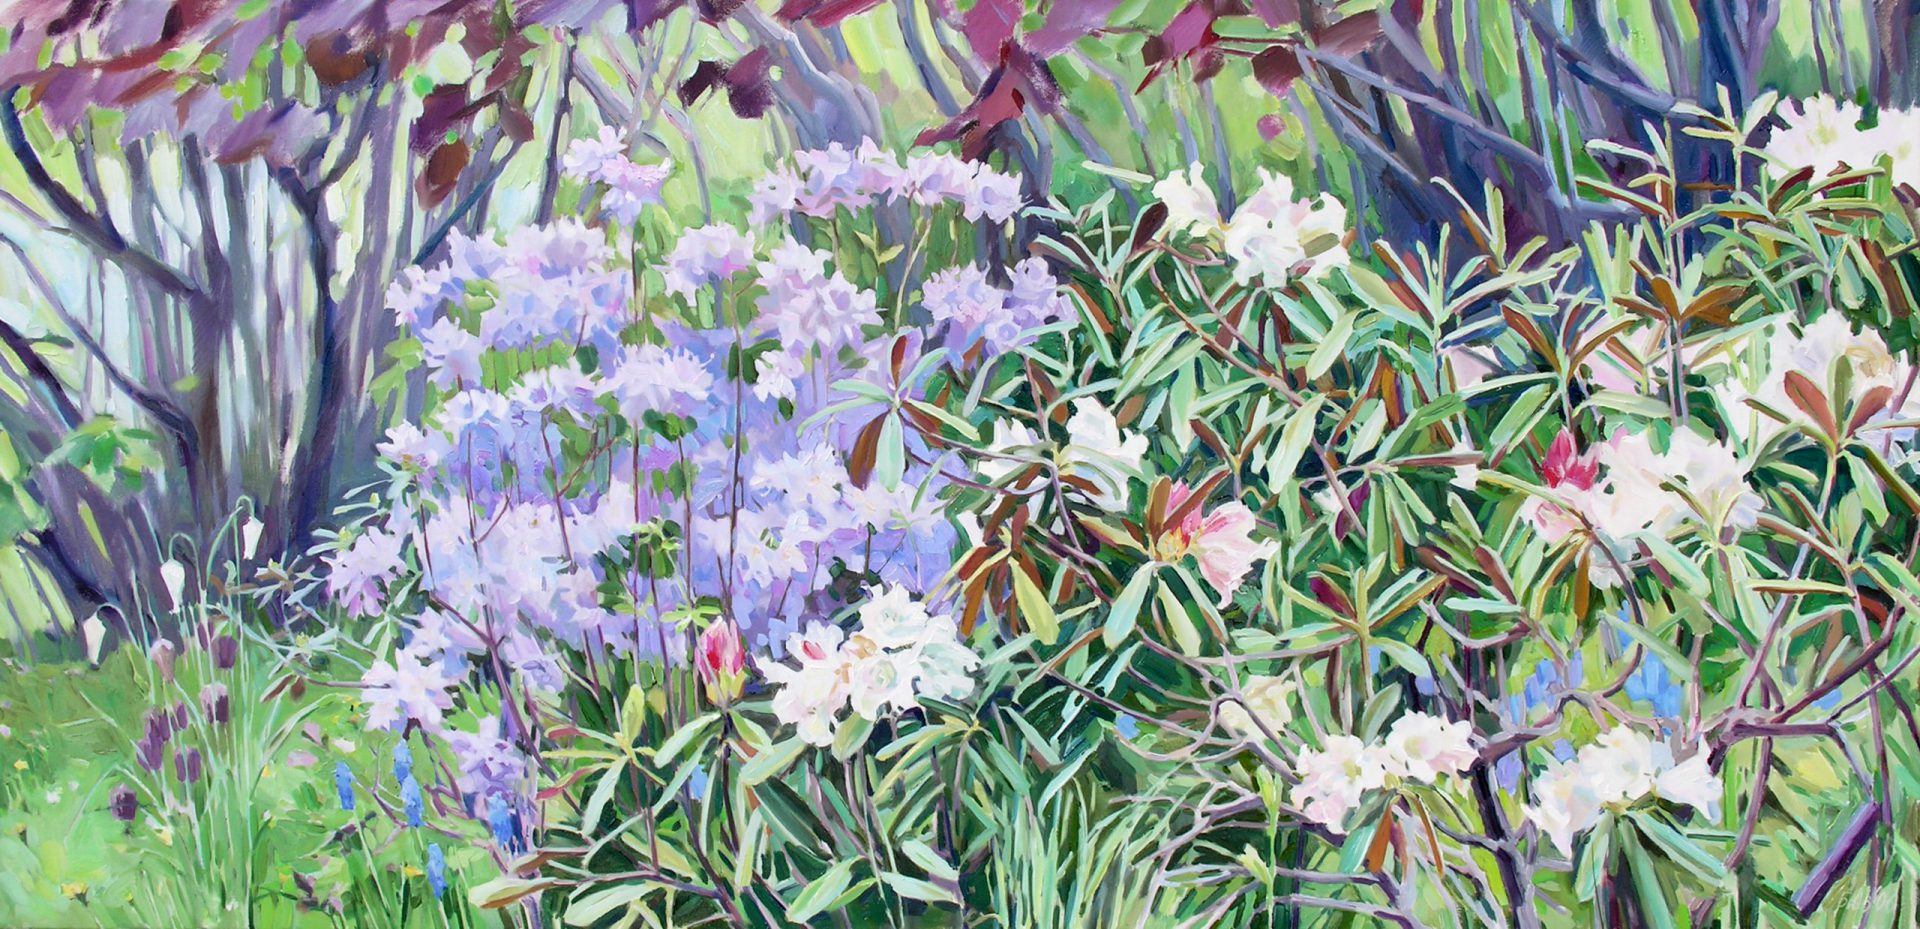 Gemälde von Julia Belot: Odiles Garten, Öl auf Leinwand, 100 cm x 200 cm, 2006